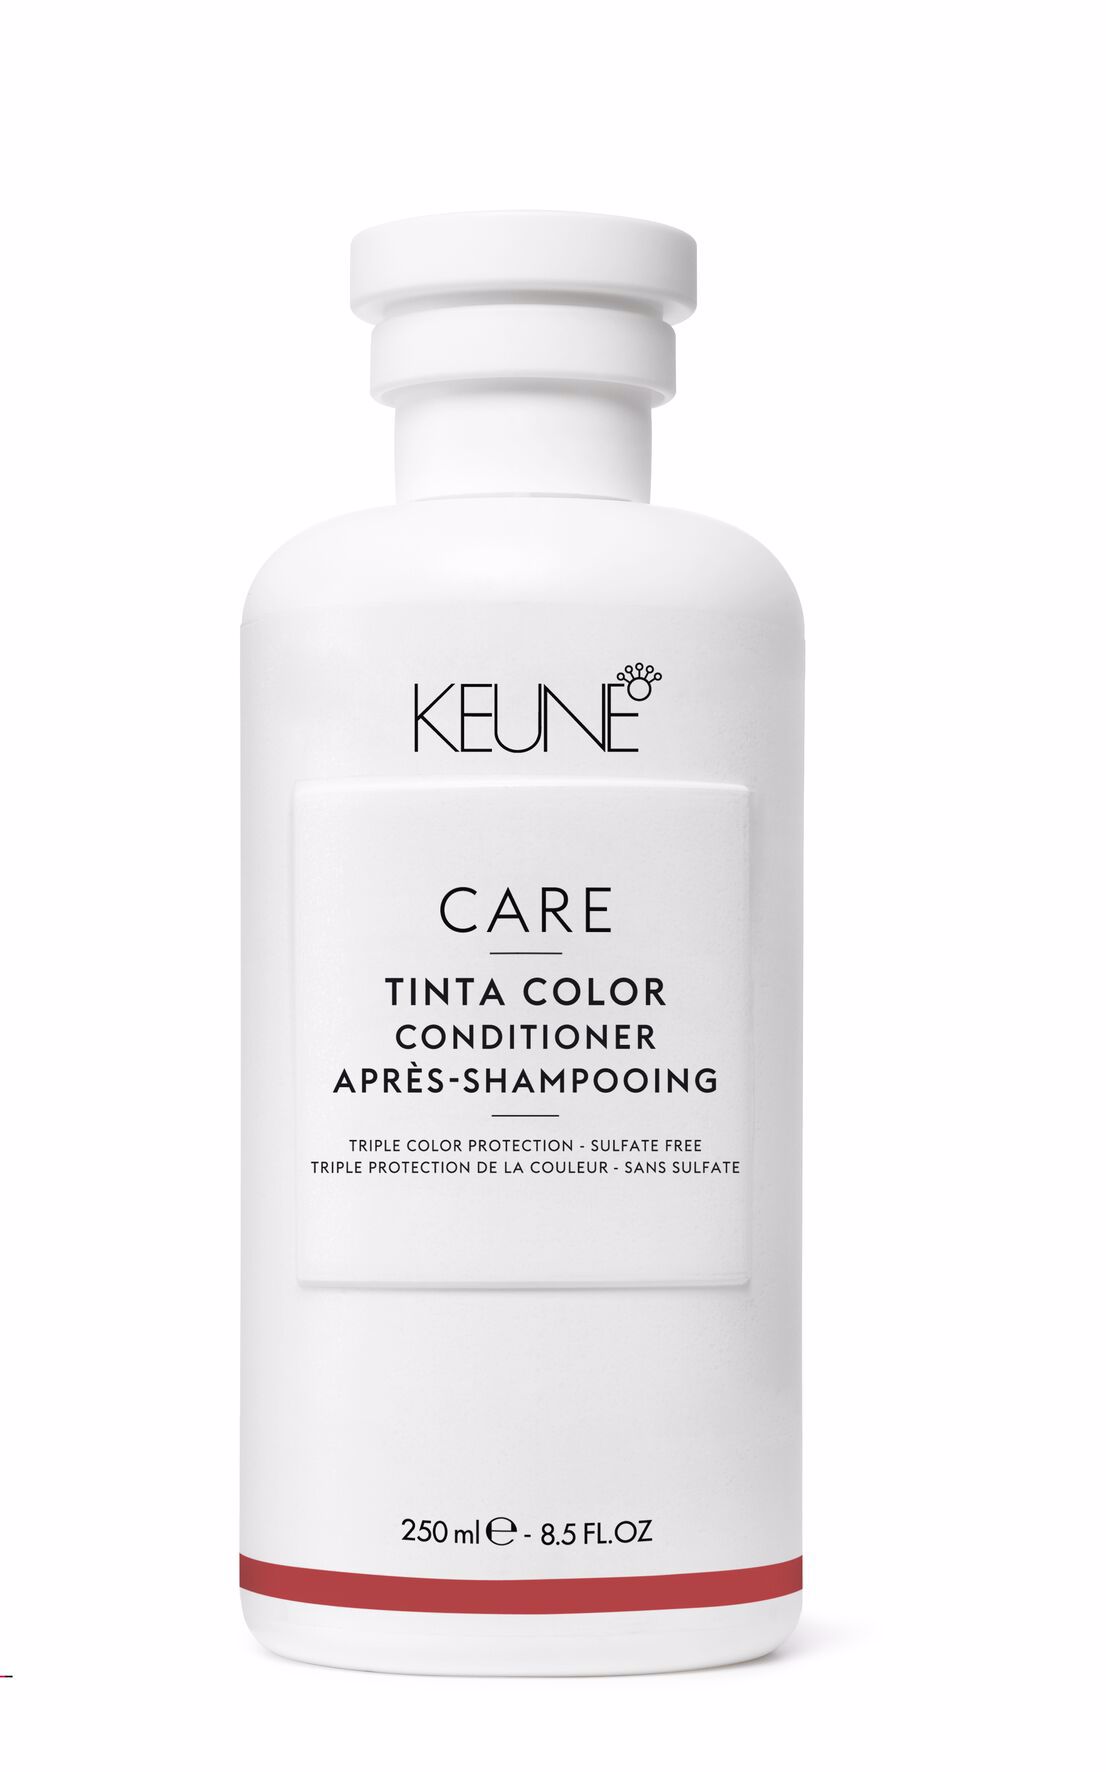 Care Tinta Color Conditioner ist ein Haarpflegeprodukt, das das Haar revitalisiert und nährt, das Ausbleichen der Farbe verhindert und langanhaltende Farbbrillanz bietet. Es ist glutenfrei. Keune.ch.